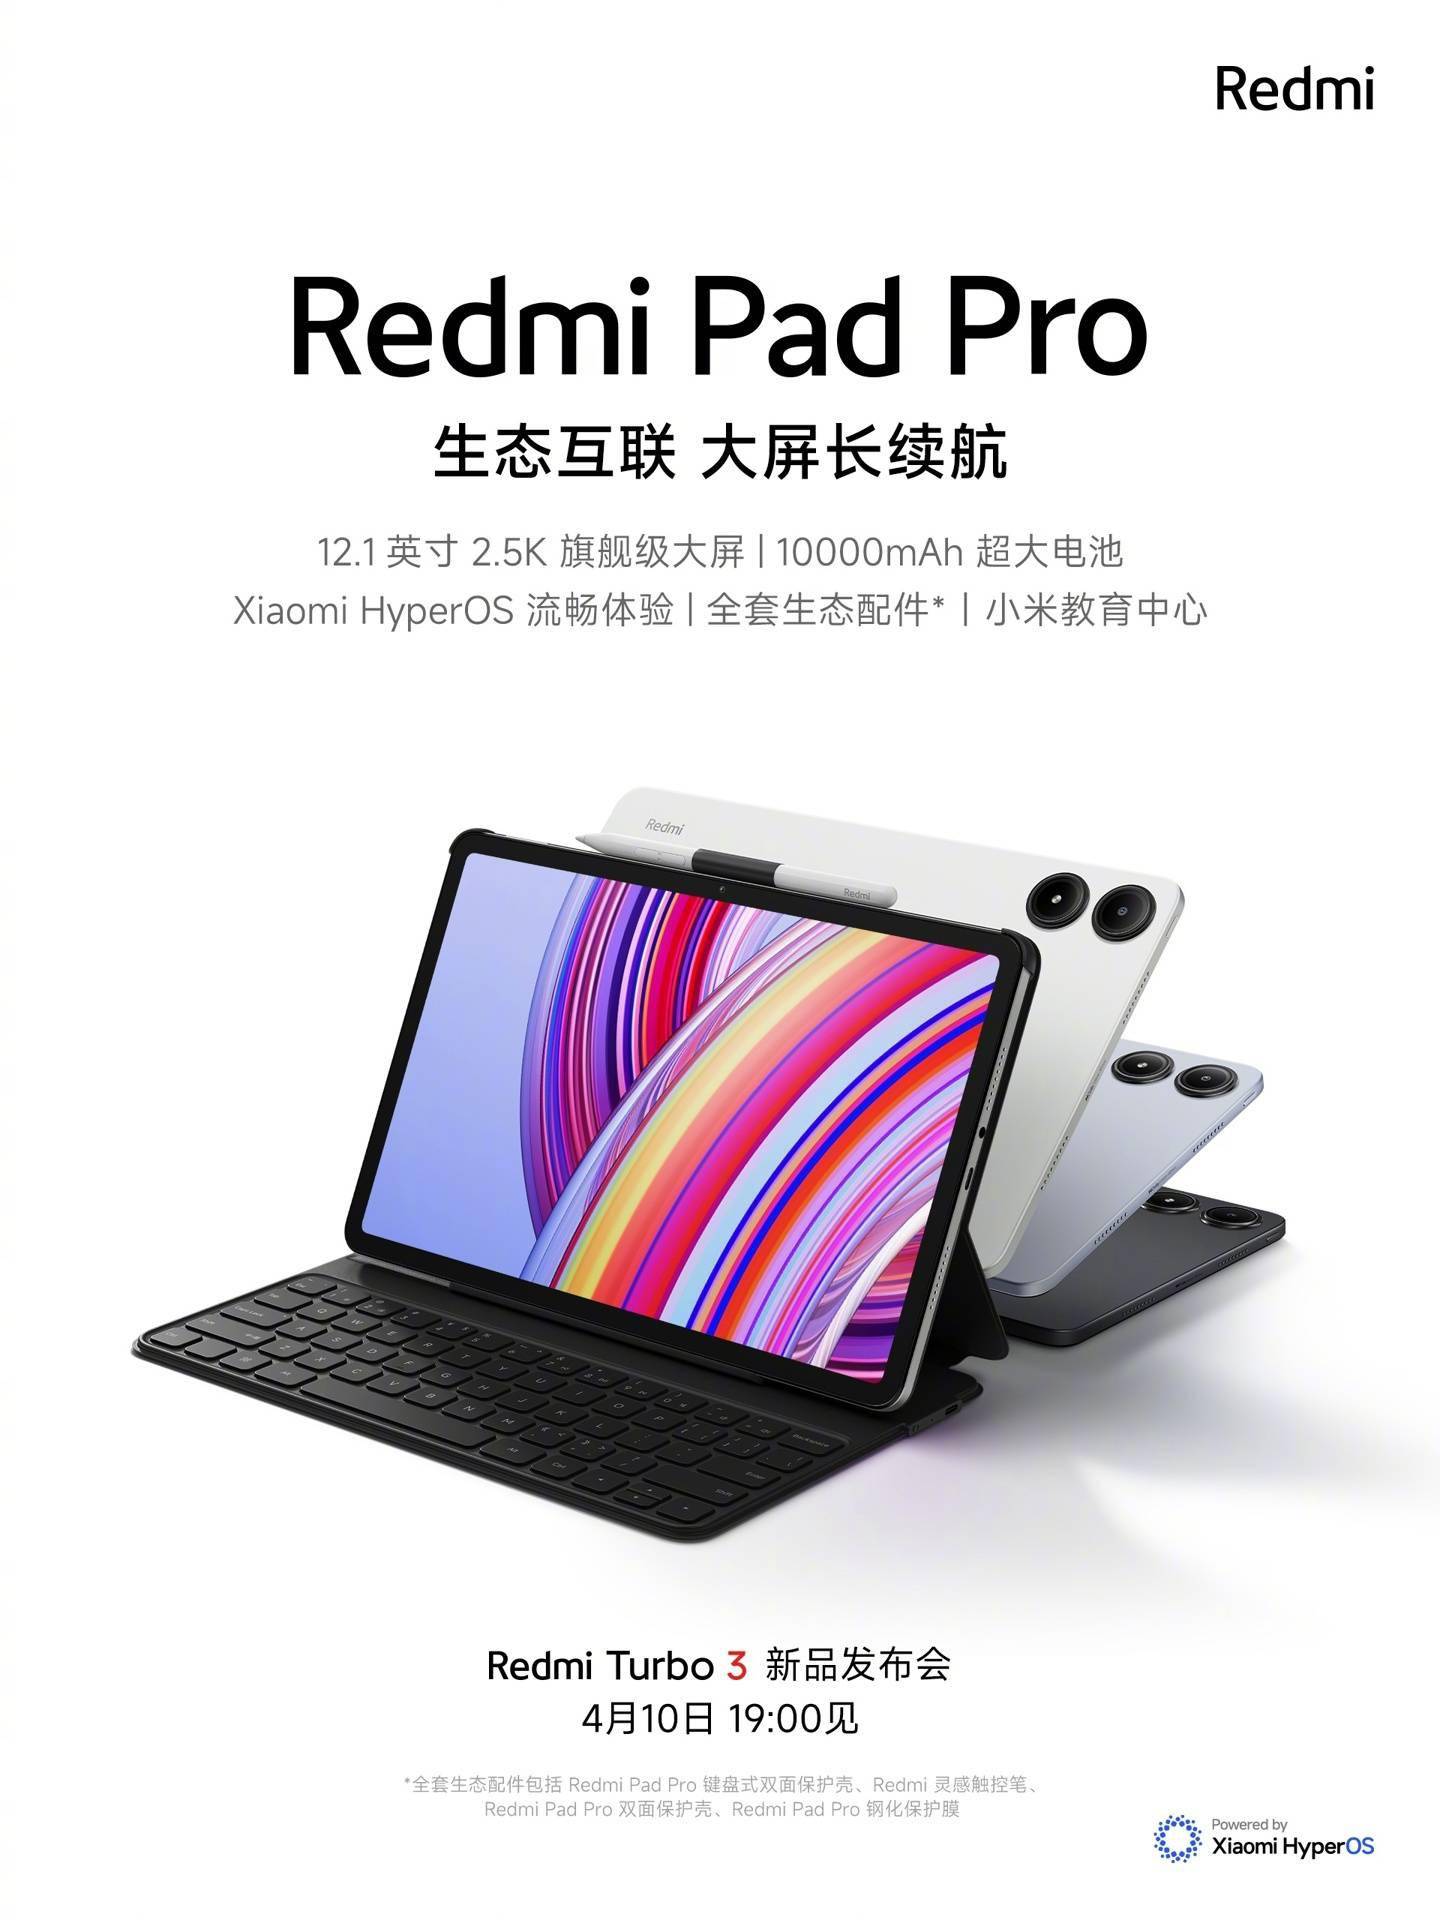 小米Redmi Pad Pro平板今日开售 采用12.1英寸超清大屏